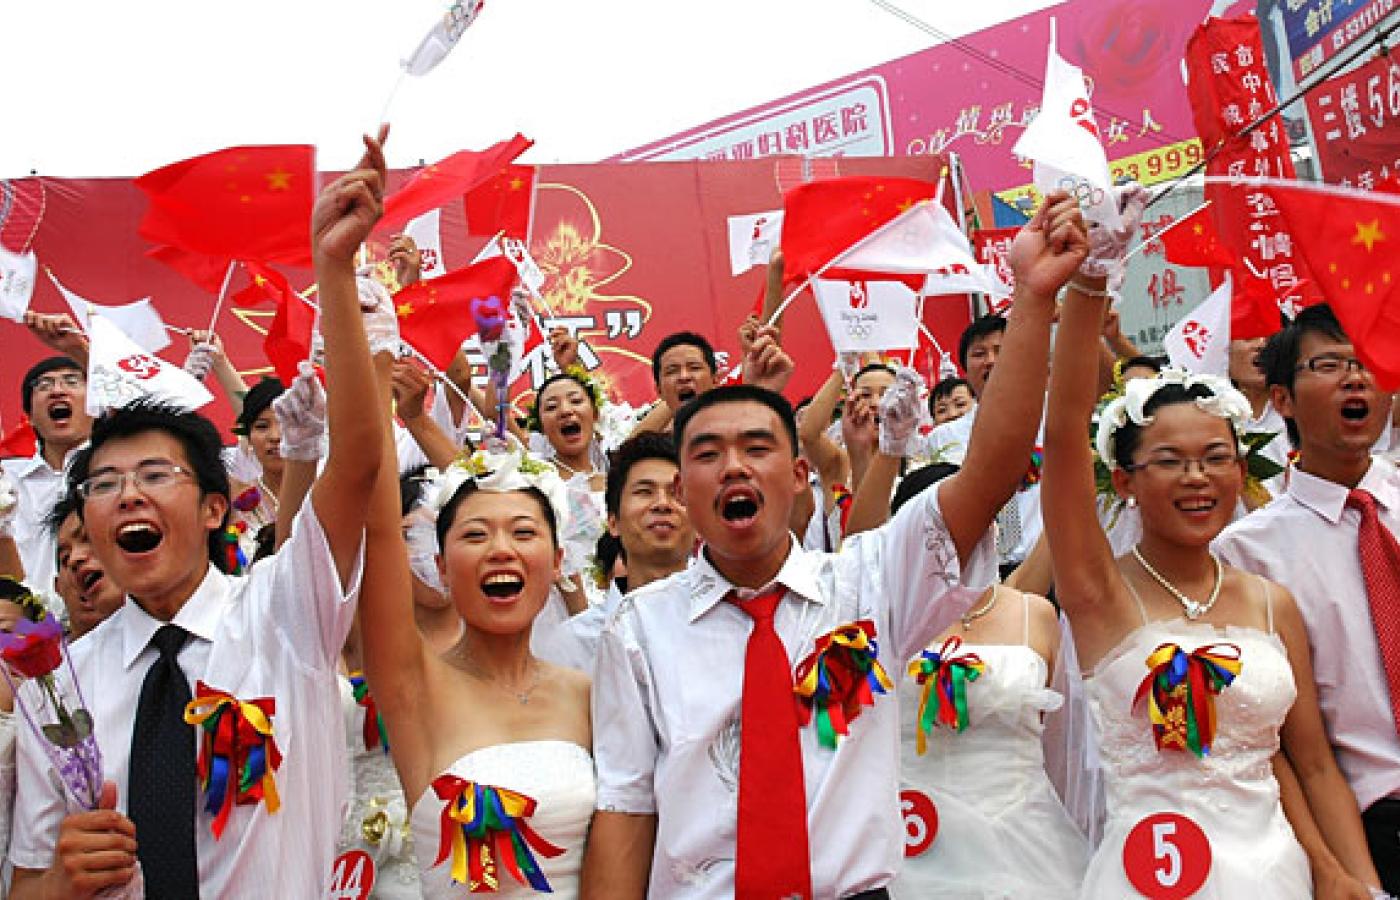 50 świeżo poślubionych par małżeńskich pozuje do fotografii na placu w mieście Binzhou 8 sierpnia 2008r. Cyfra 8 symbolizuje w Chinach pomyślność, a data zapisana numerycznie zawiera aż 3 ósemki (08.08.08) to szczęście potrójne. Fot. Reporter